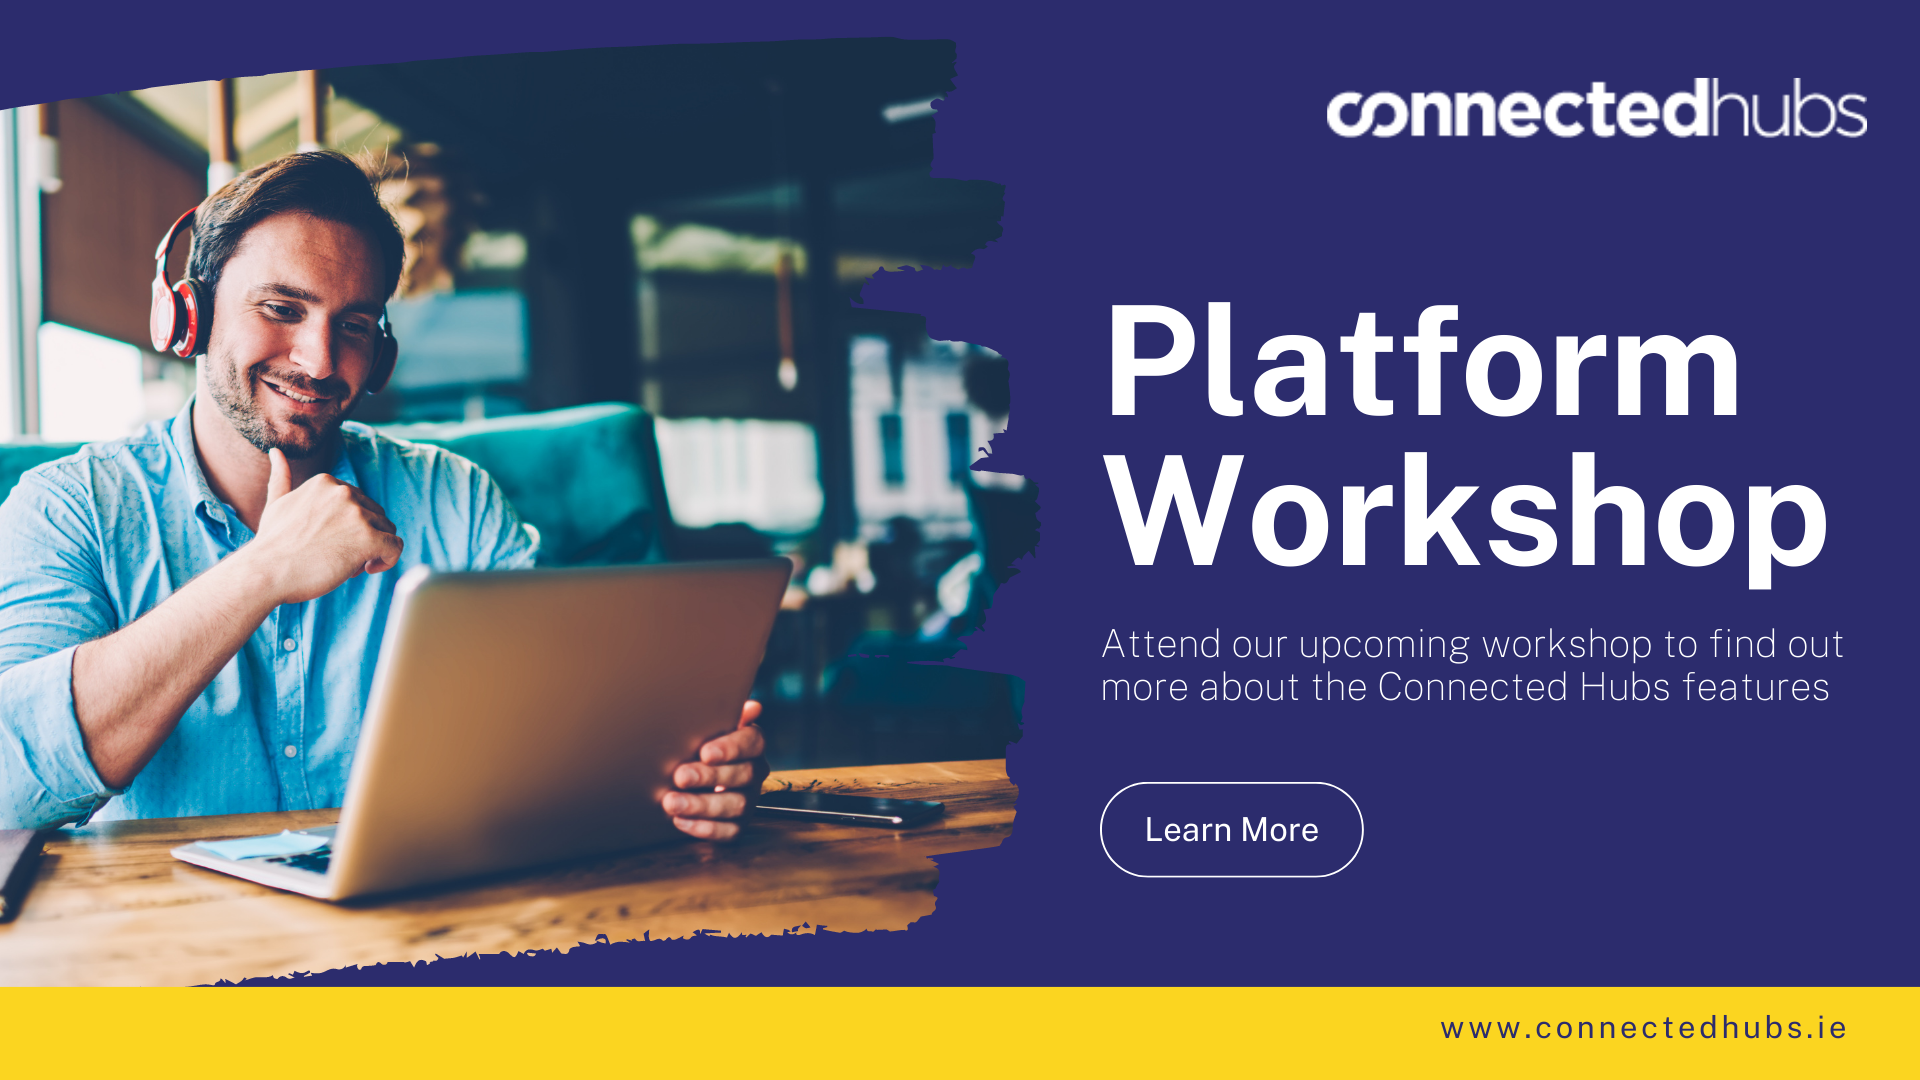 Connected Hubs Platform Workshop for Hub Managers